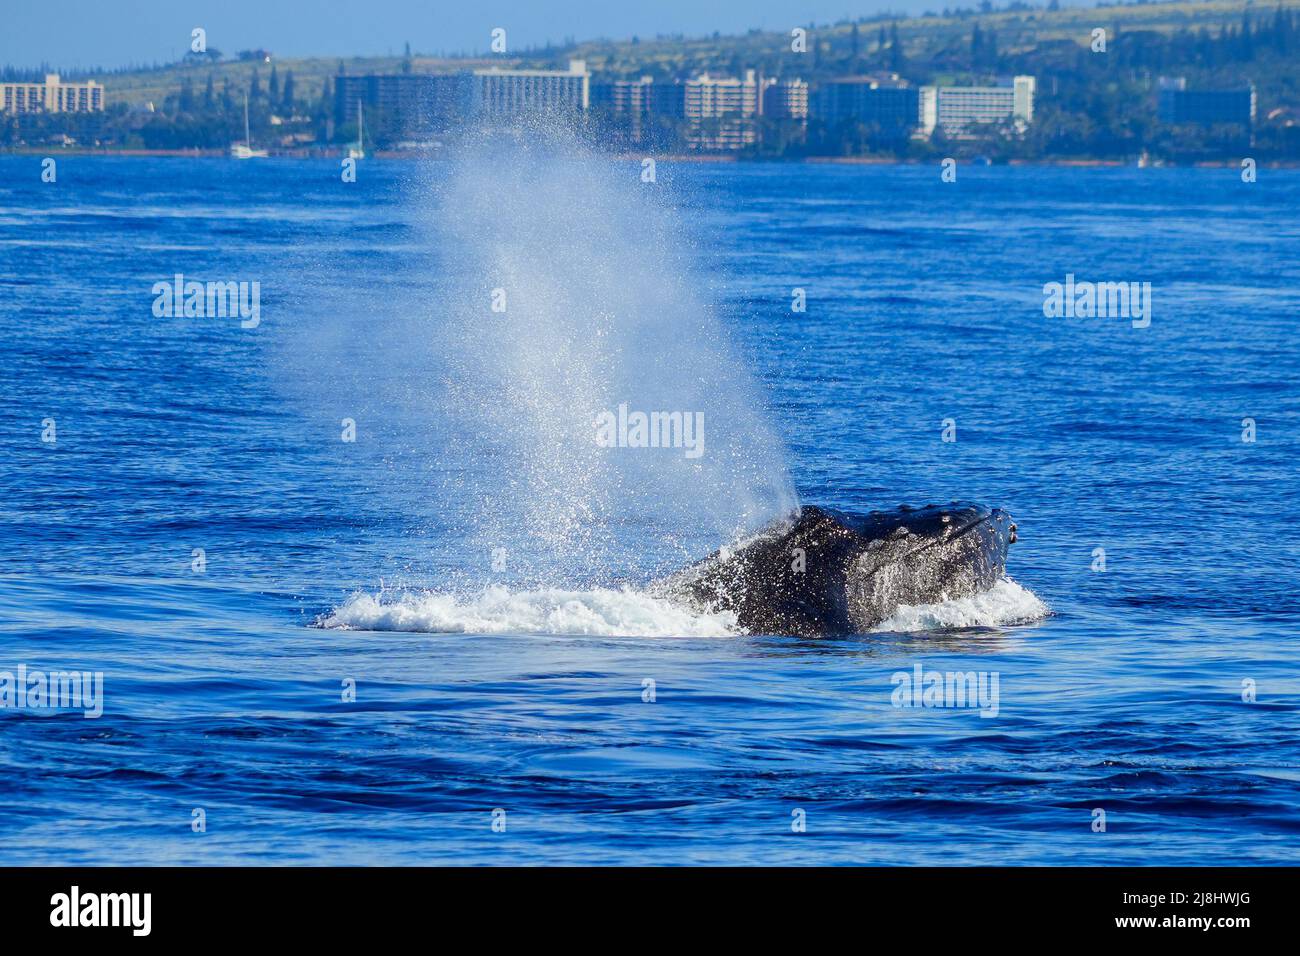 Baleines à bosse pulvérisant de l'eau dans les eaux entre Maui et les îles Lanai à Hawaï pendant la migration hivernale des baleines - respiration de mammifères marins géants Banque D'Images